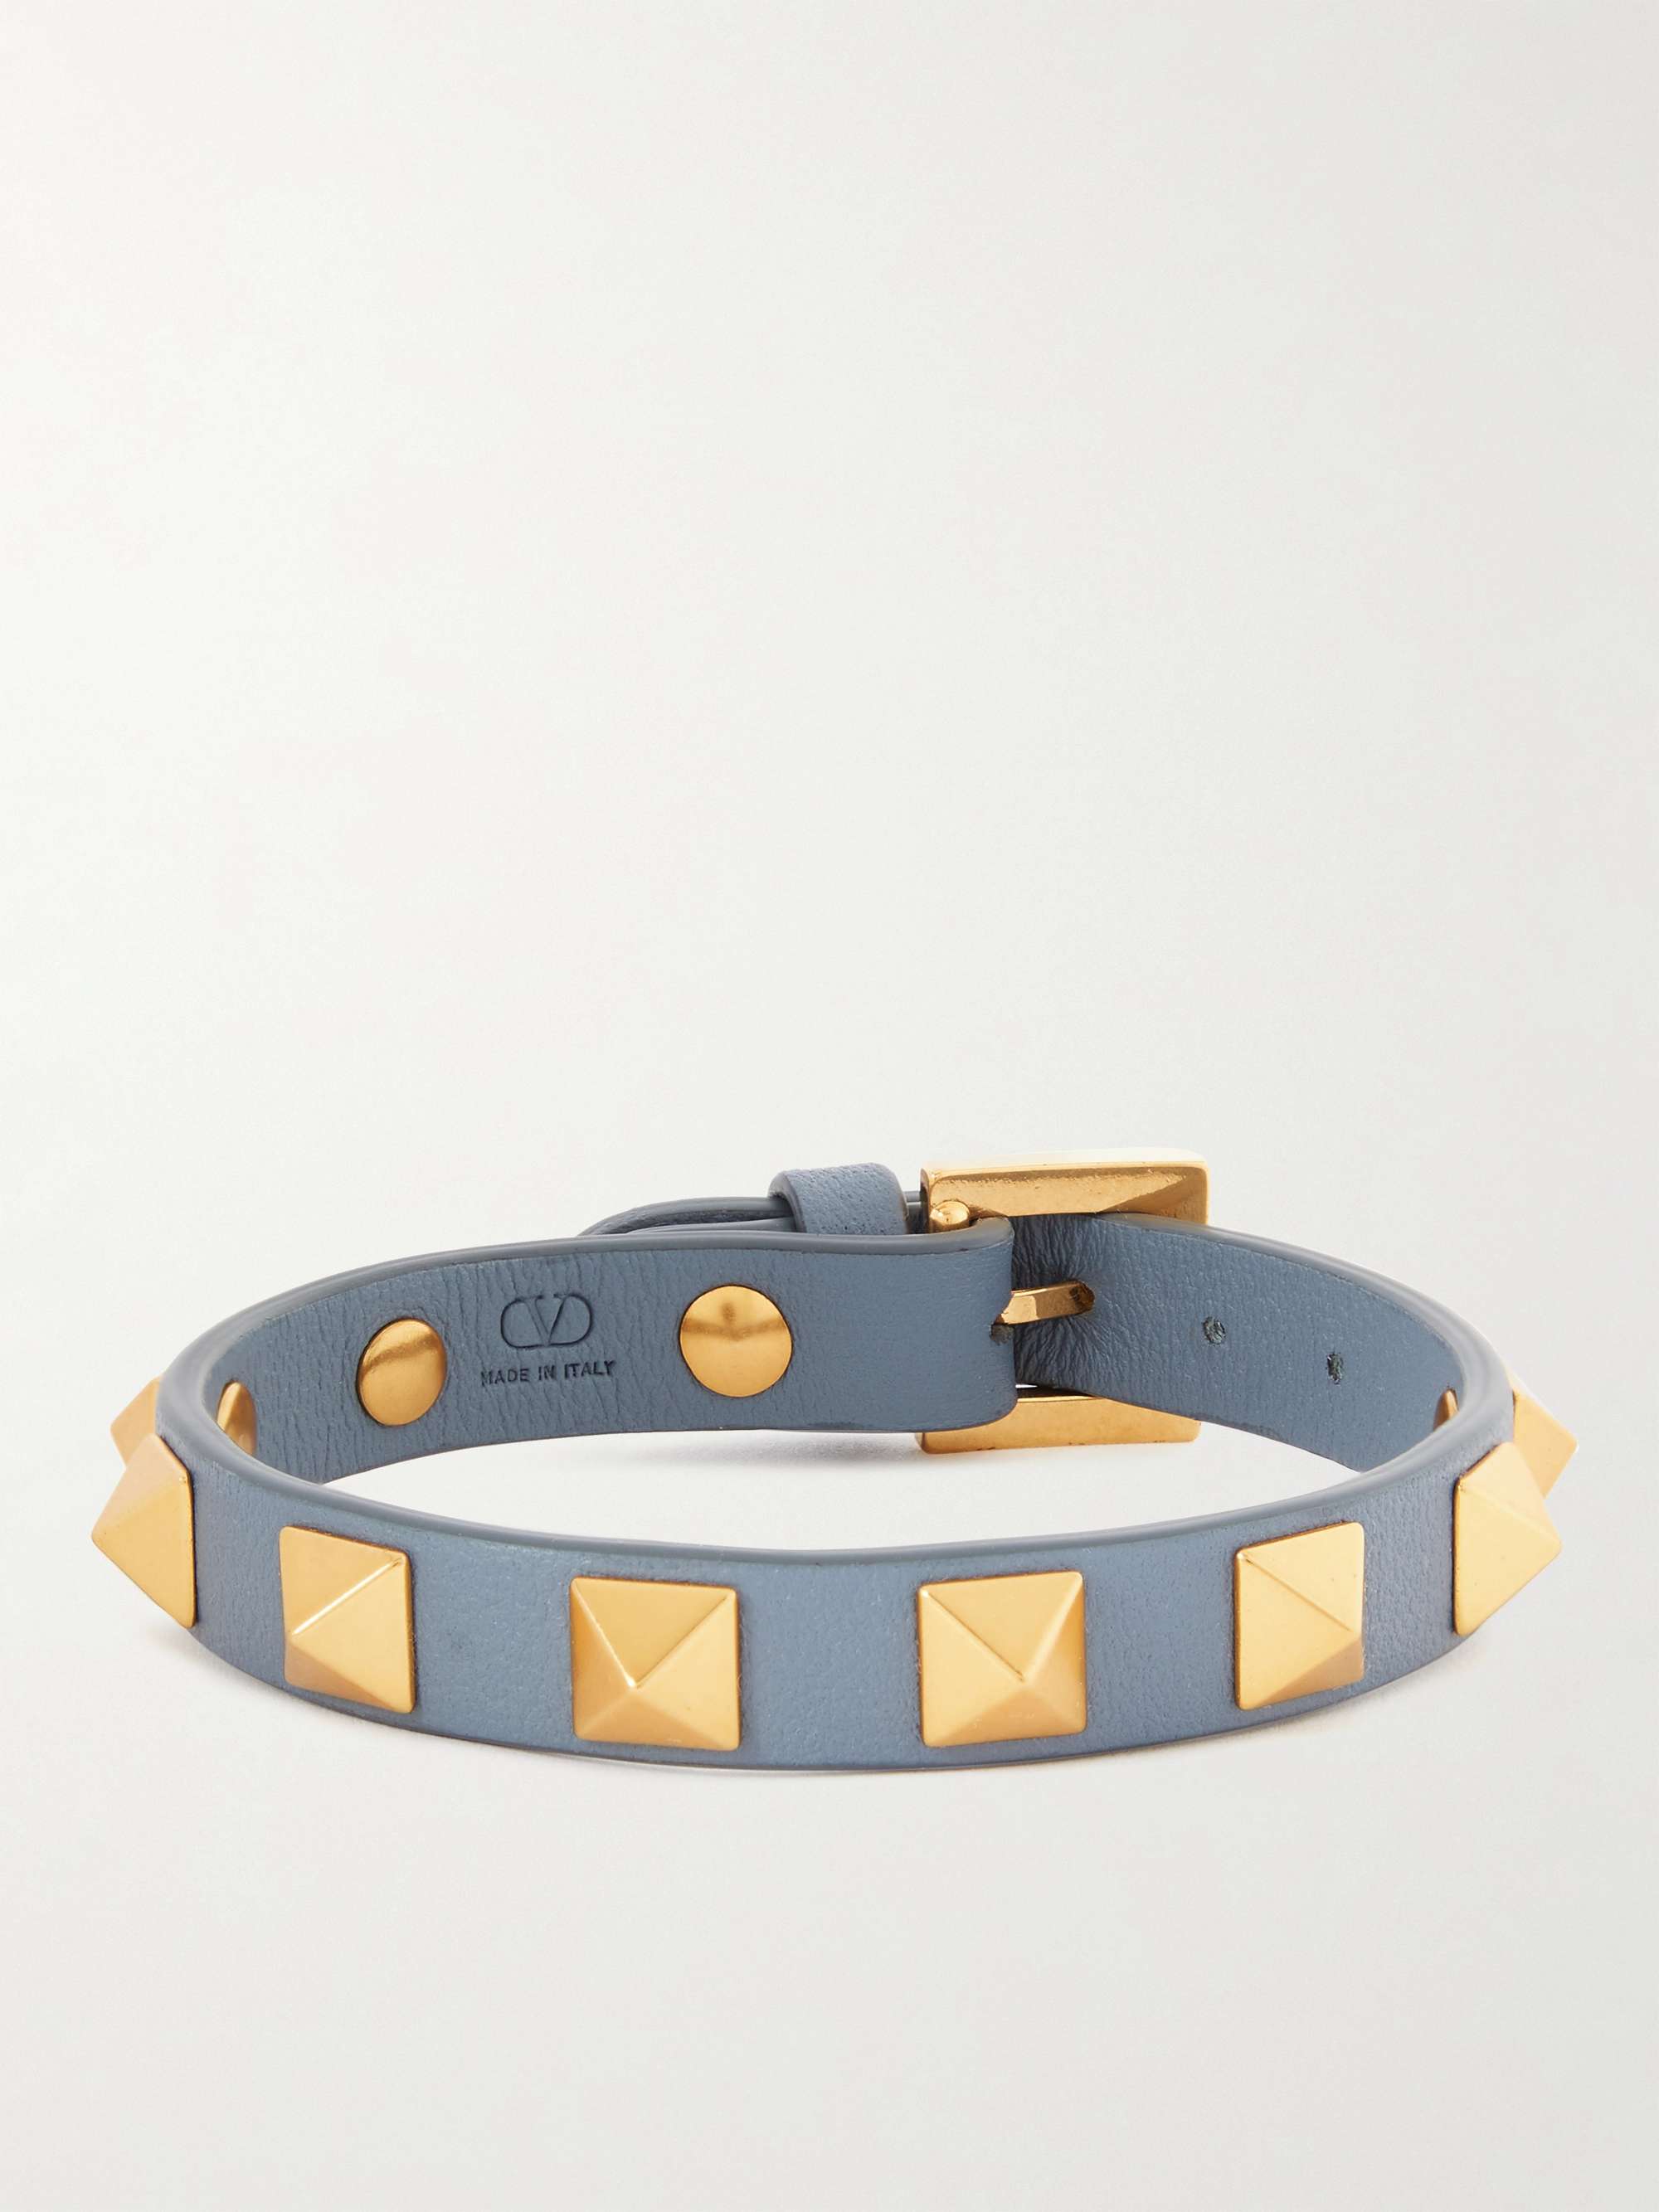 VALENTINO GARAVANI Rockstud Gold-Tone and Leather Bracelet for Men | MR  PORTER